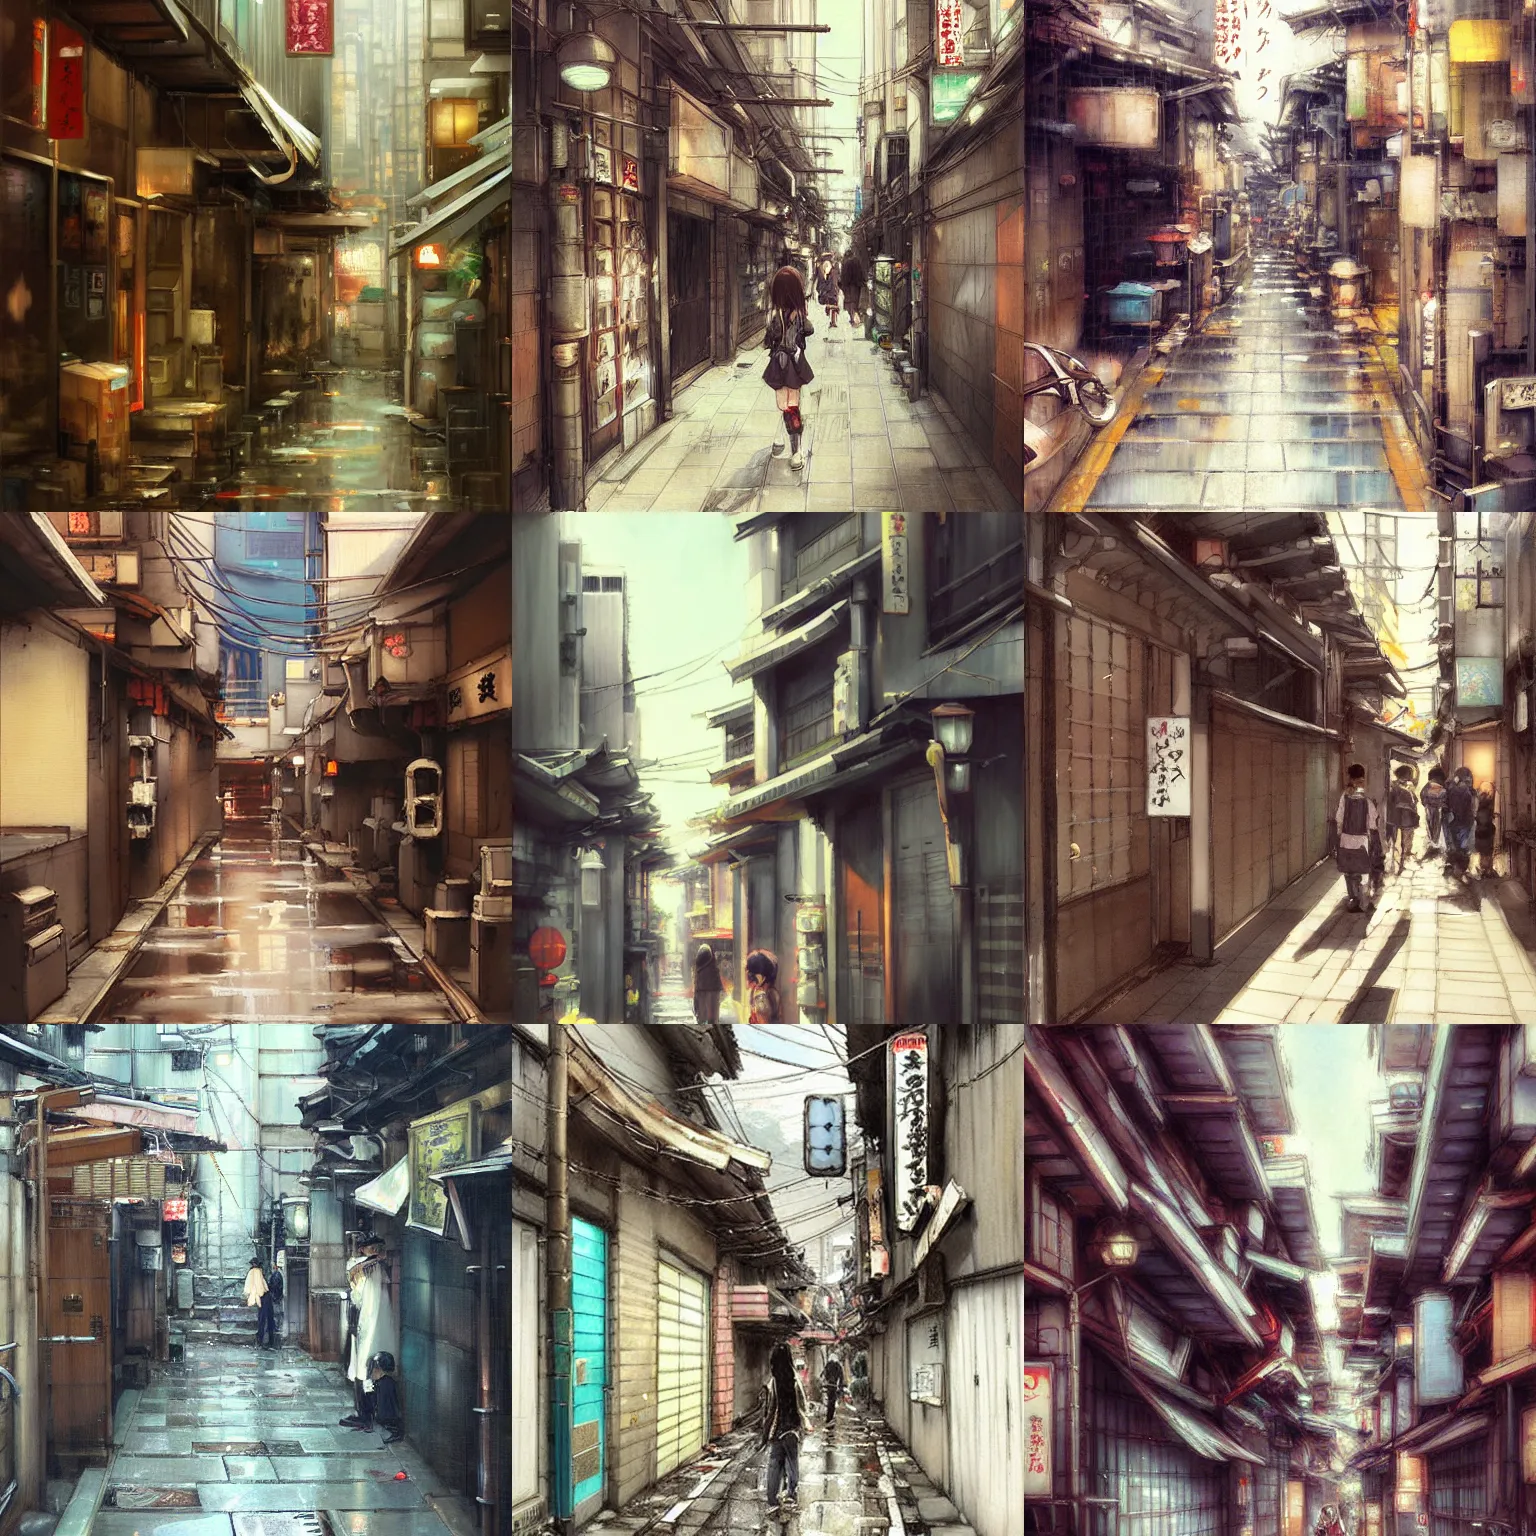 Prompt: tokyo alleyway by krenz cushart, beautiful